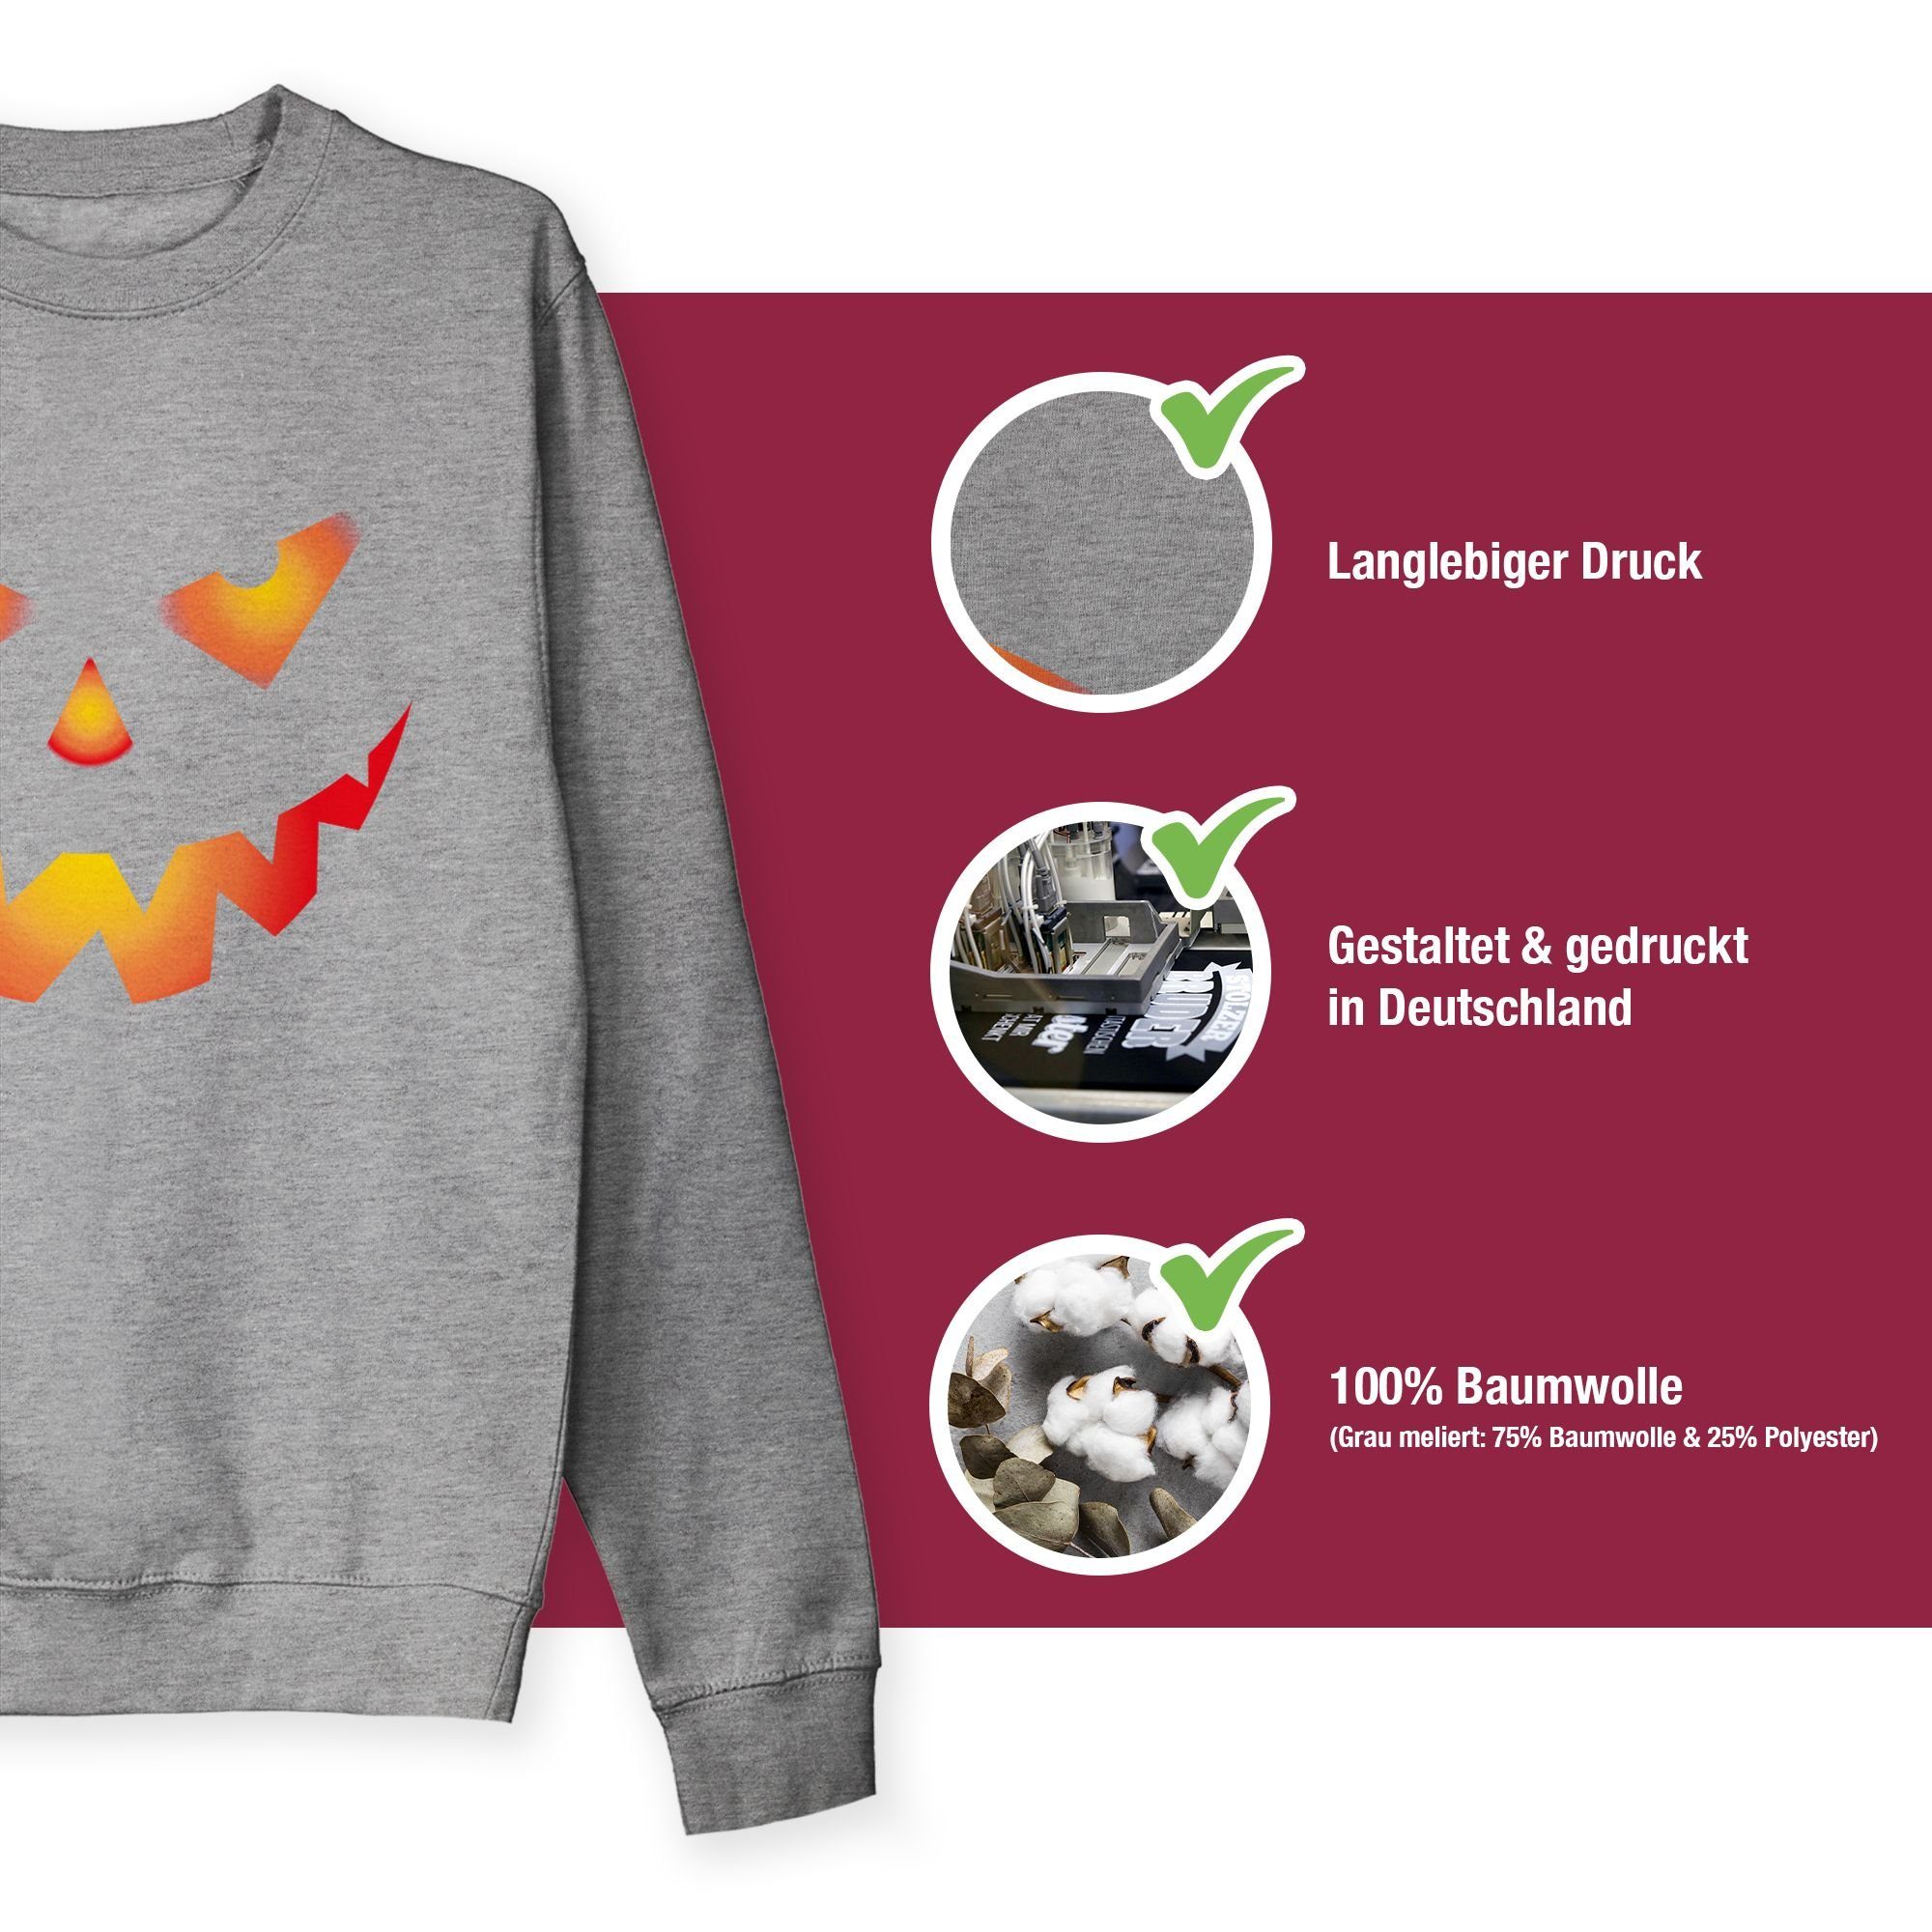 Shirtracer Sweatshirt Halloween Kürbis Damen (1-tlg) Kostüme meliert 2 Grau Gruseliger Gruselig Kürbisgesicht Böse Gesicht Halloween